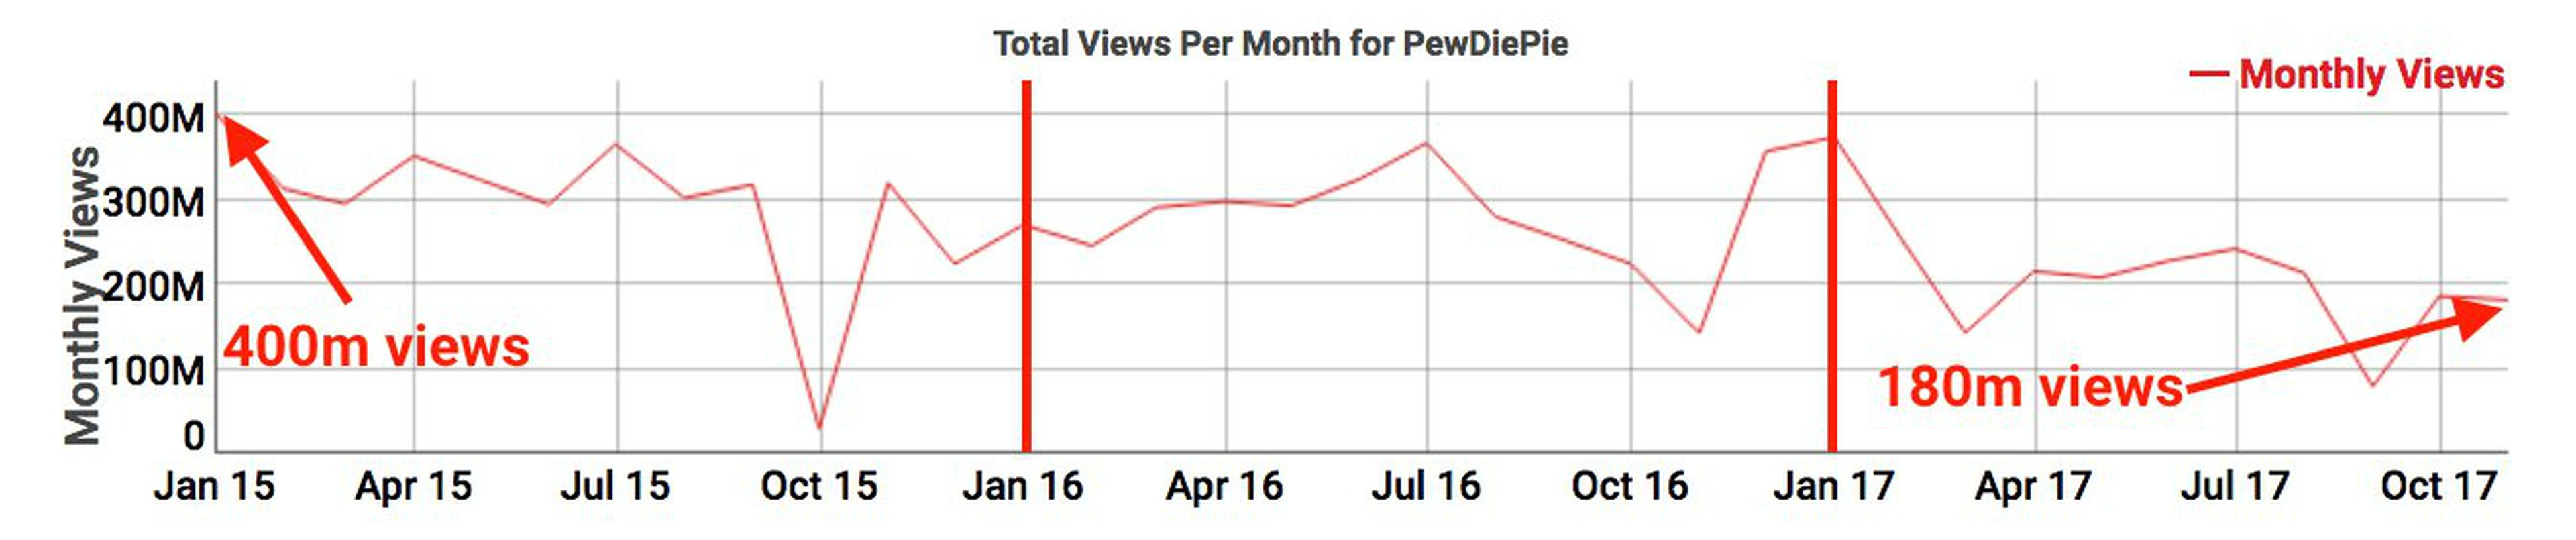 Parece que cada vez menos personas apuestan por PewDiePie en YouTube.